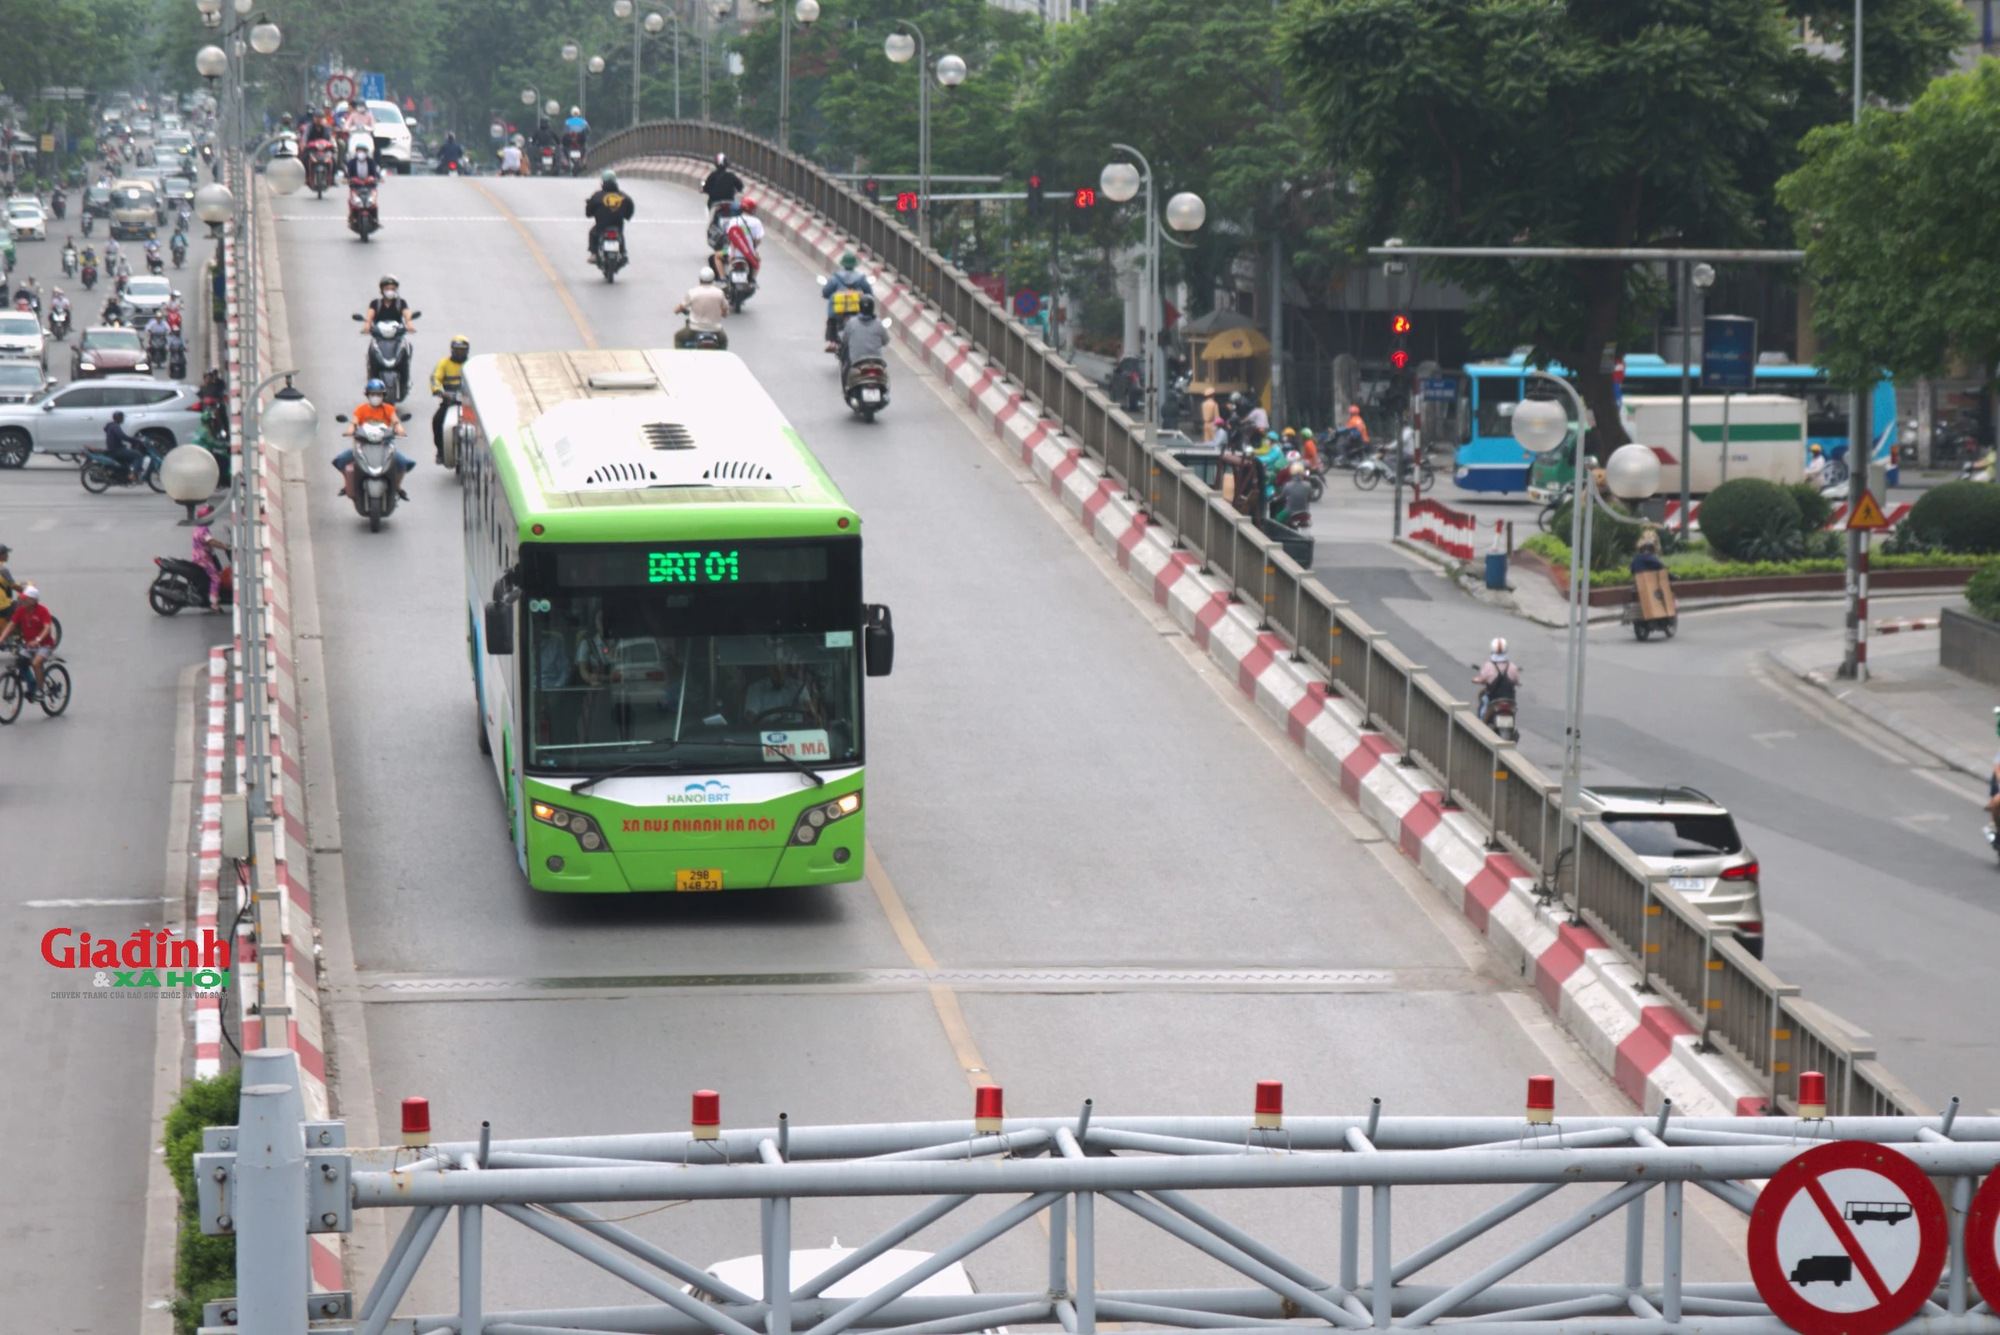 Hà Nội: Tuyến buýt nhanh BRT hoạt động ra sao trước ngày bị "khai tử"- Ảnh 5.